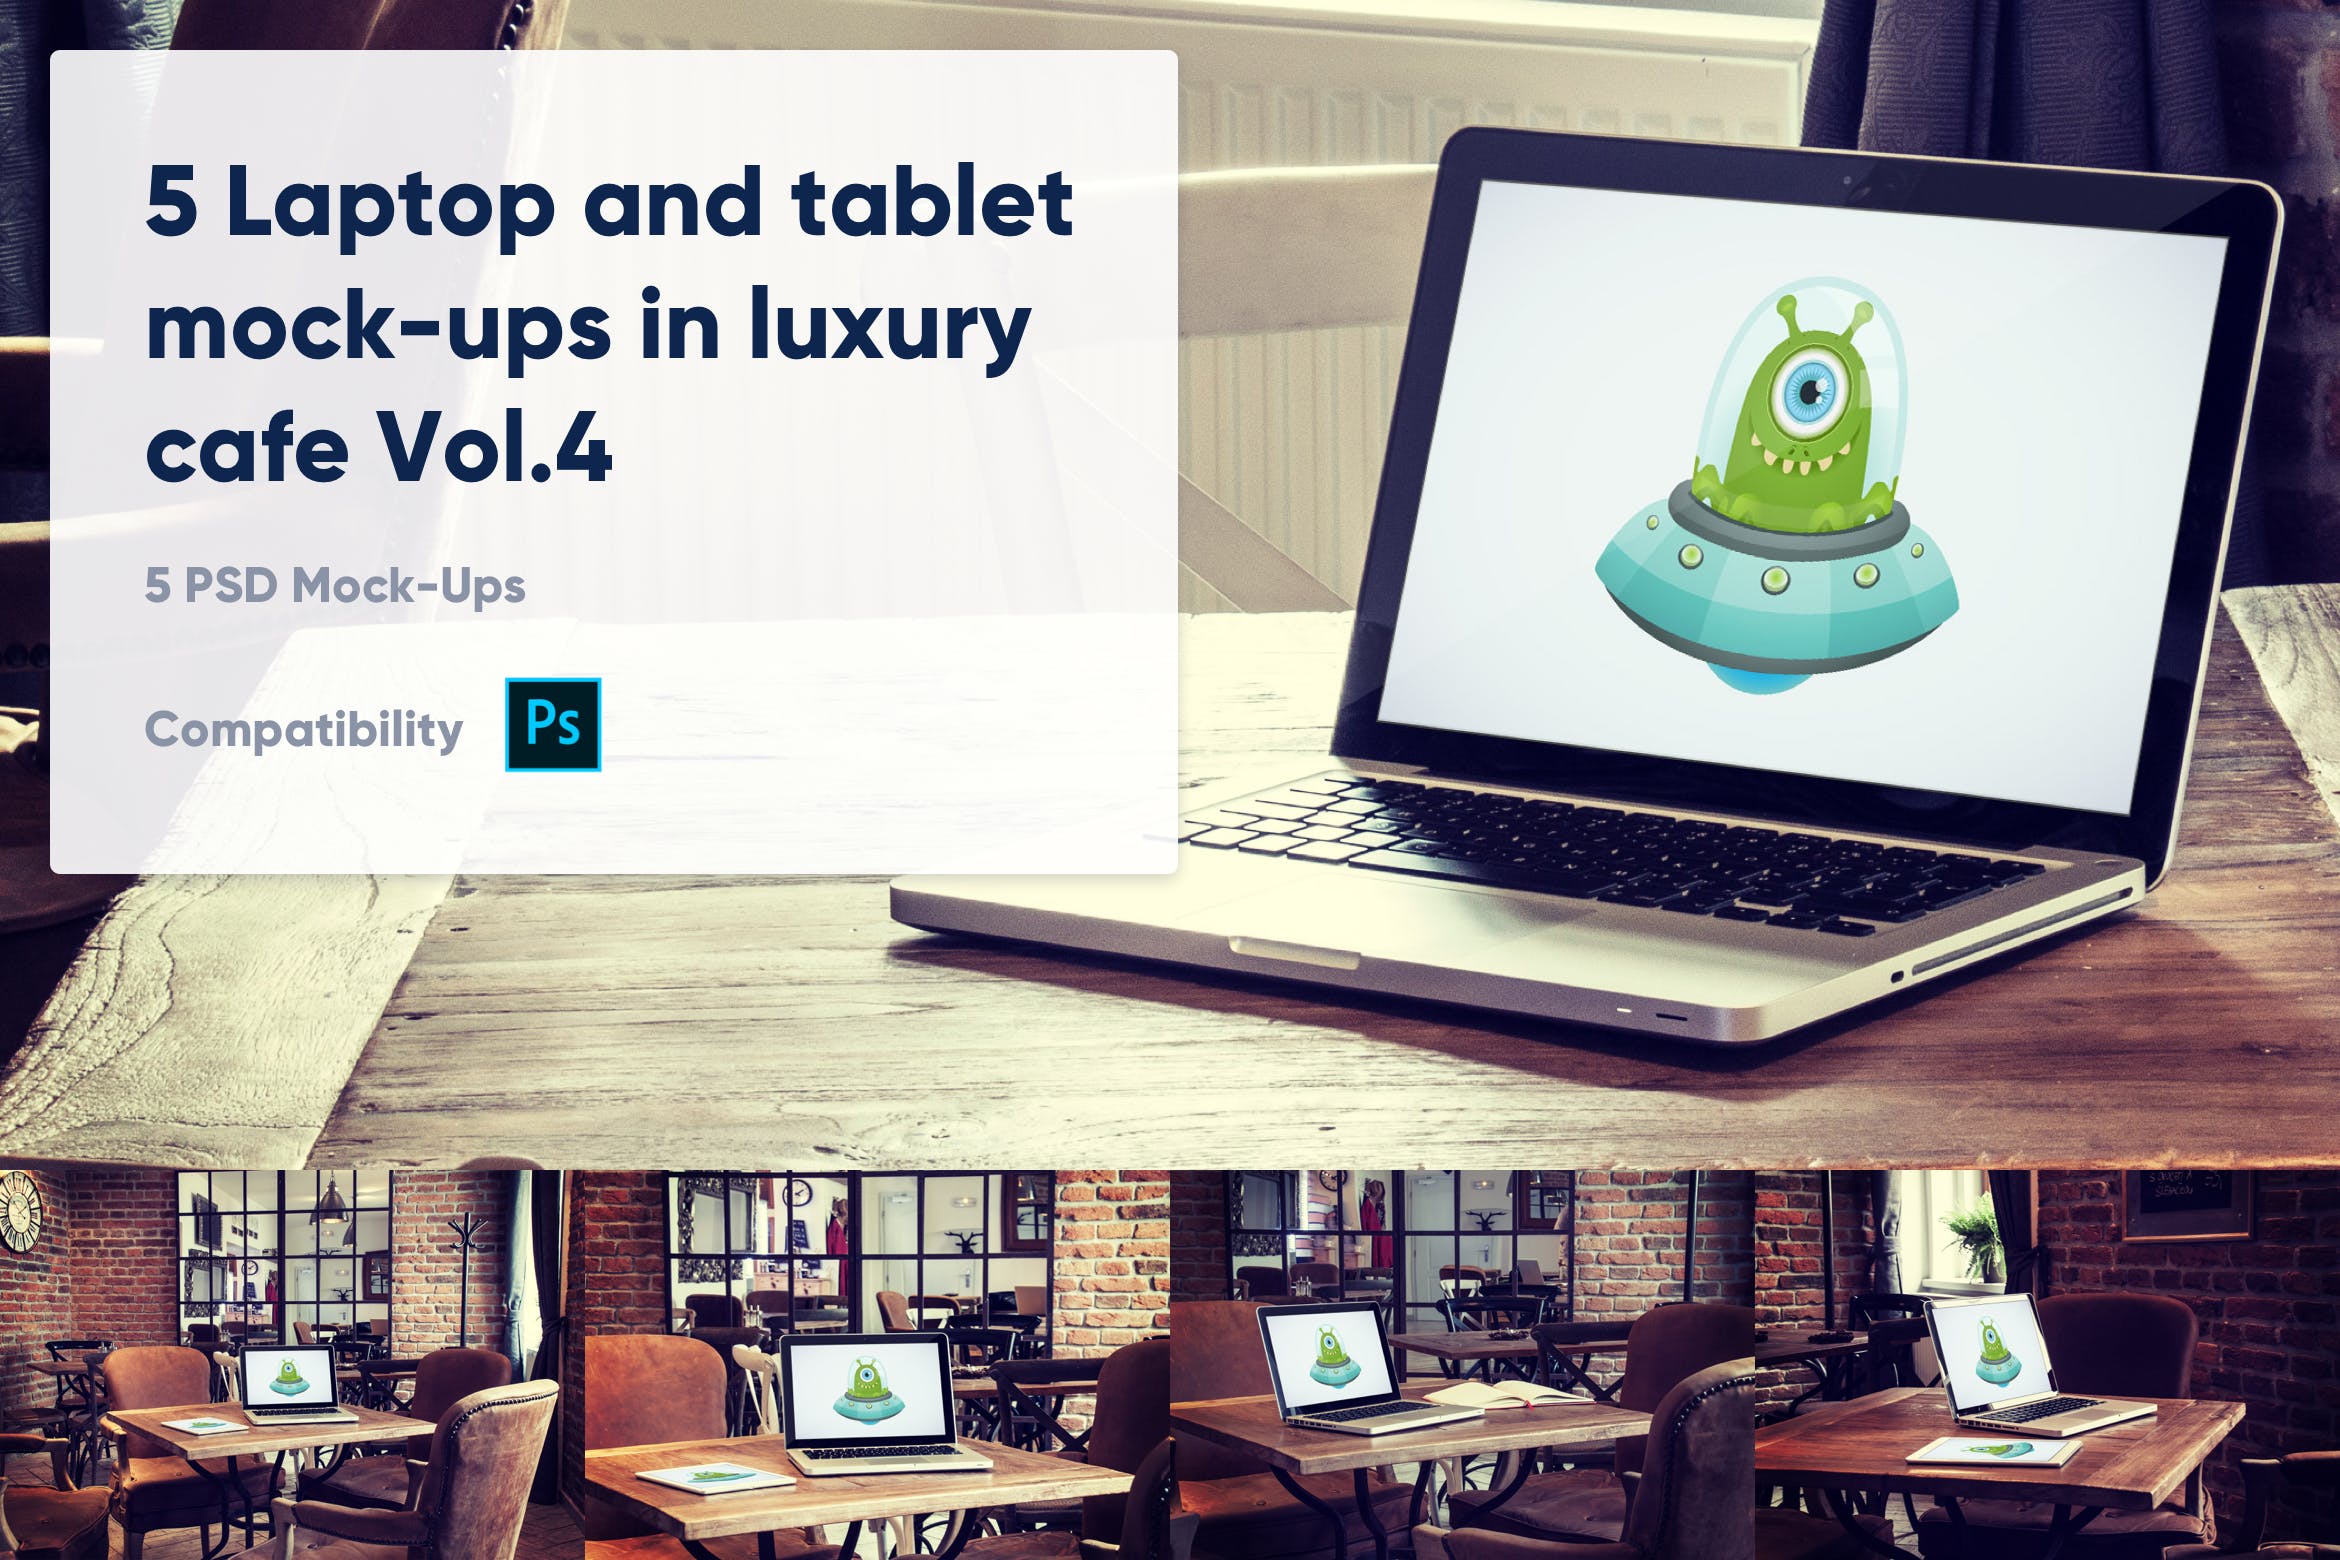 咖啡店场景MacBook&iPad屏幕预览蚂蚁素材精选样机模板v4 5 Laptop and tablet mock-ups in cafe Vol. 4插图